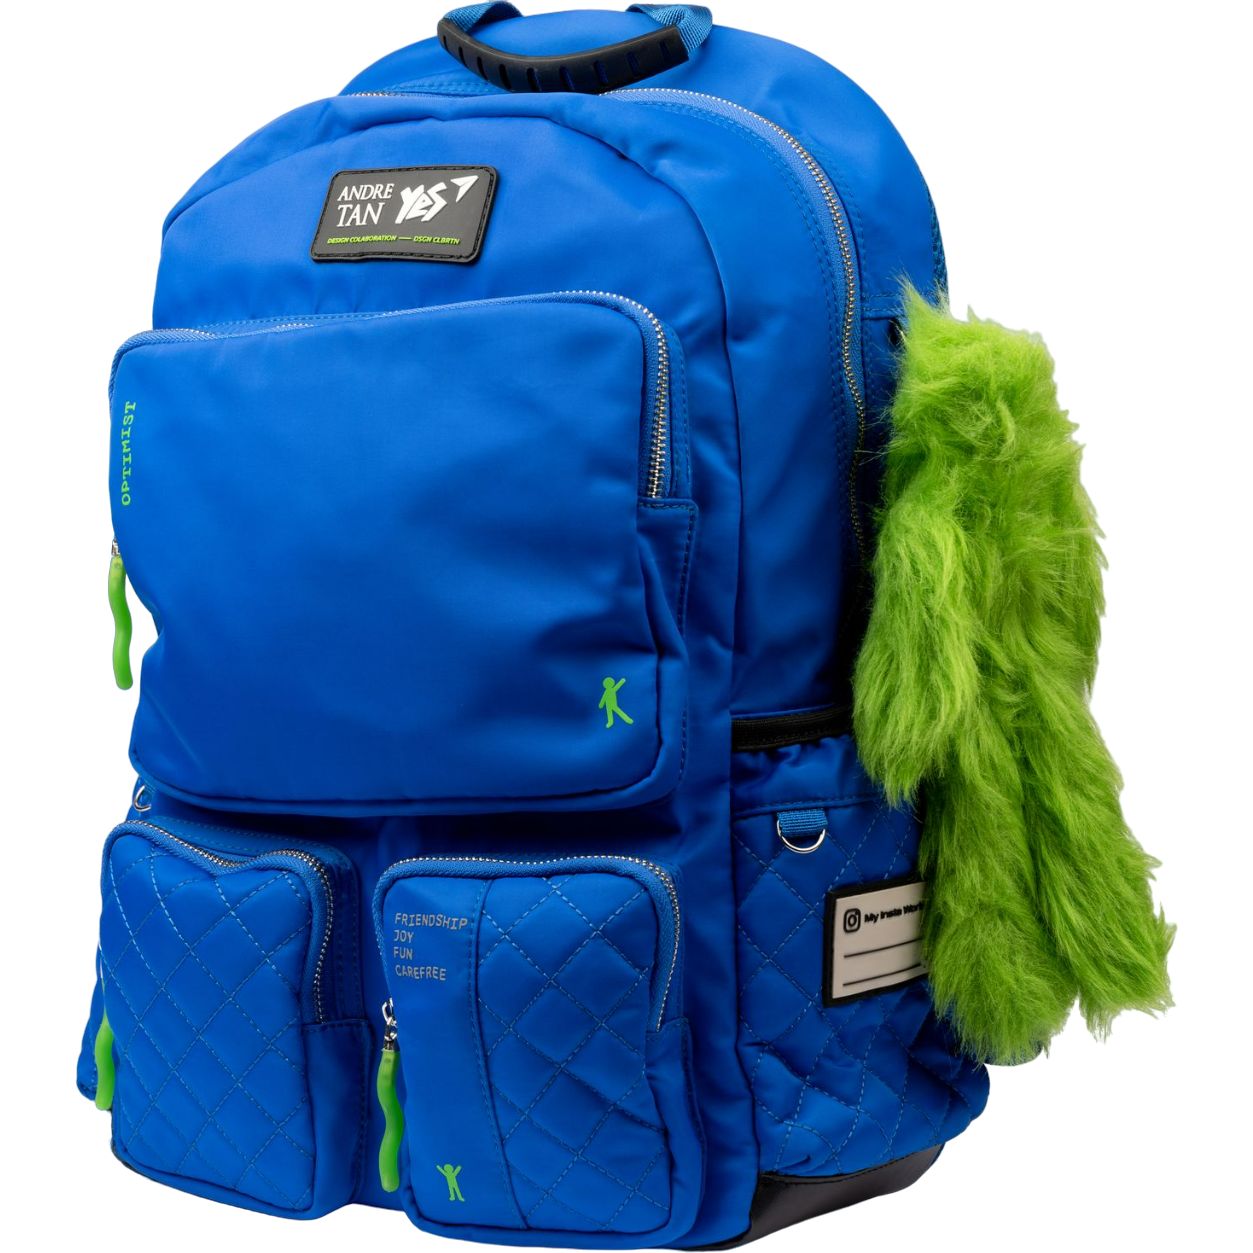 Фото - Школьный рюкзак (ранец) Yes Рюкзак  T-130 Andre Tan Double plus blue  (559048)